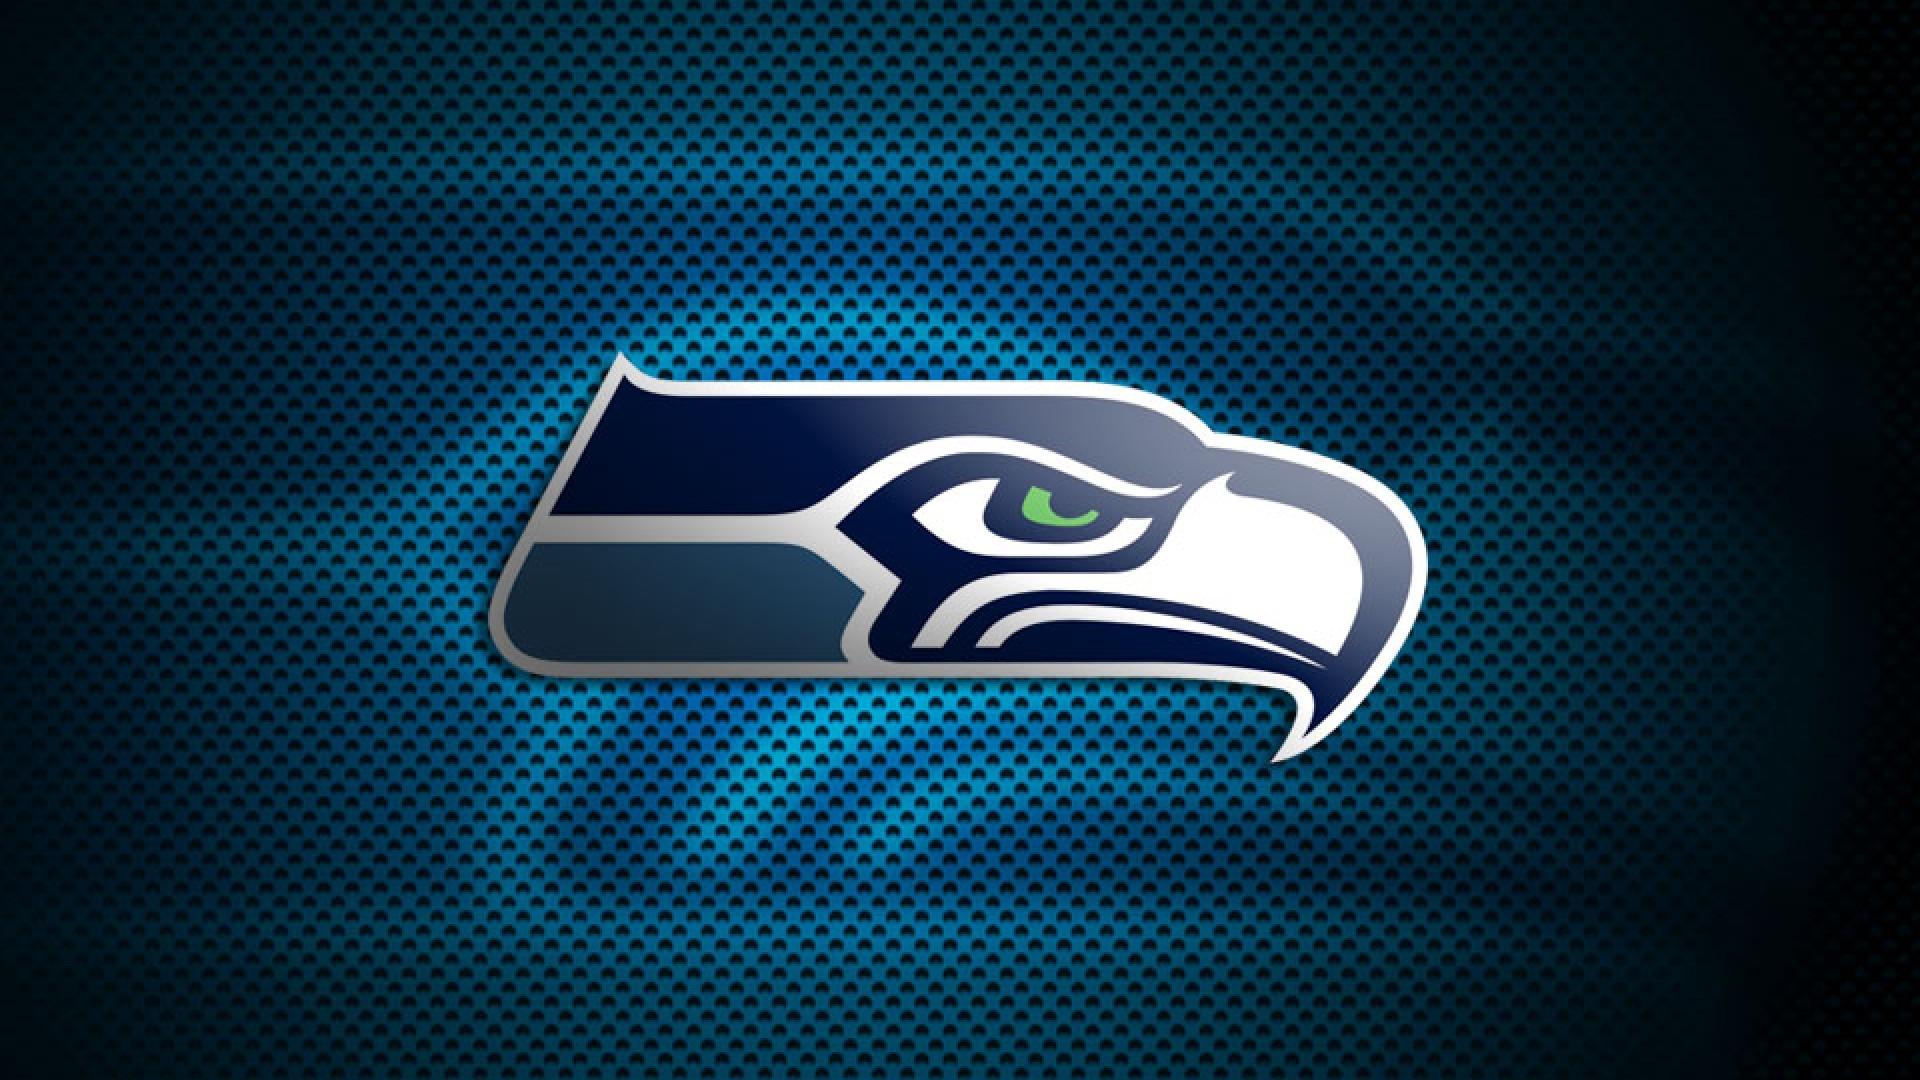 NFL Seahawks Logo - NFL Seahawks Seattle Logo 1920×1080 Definition Wallpaper